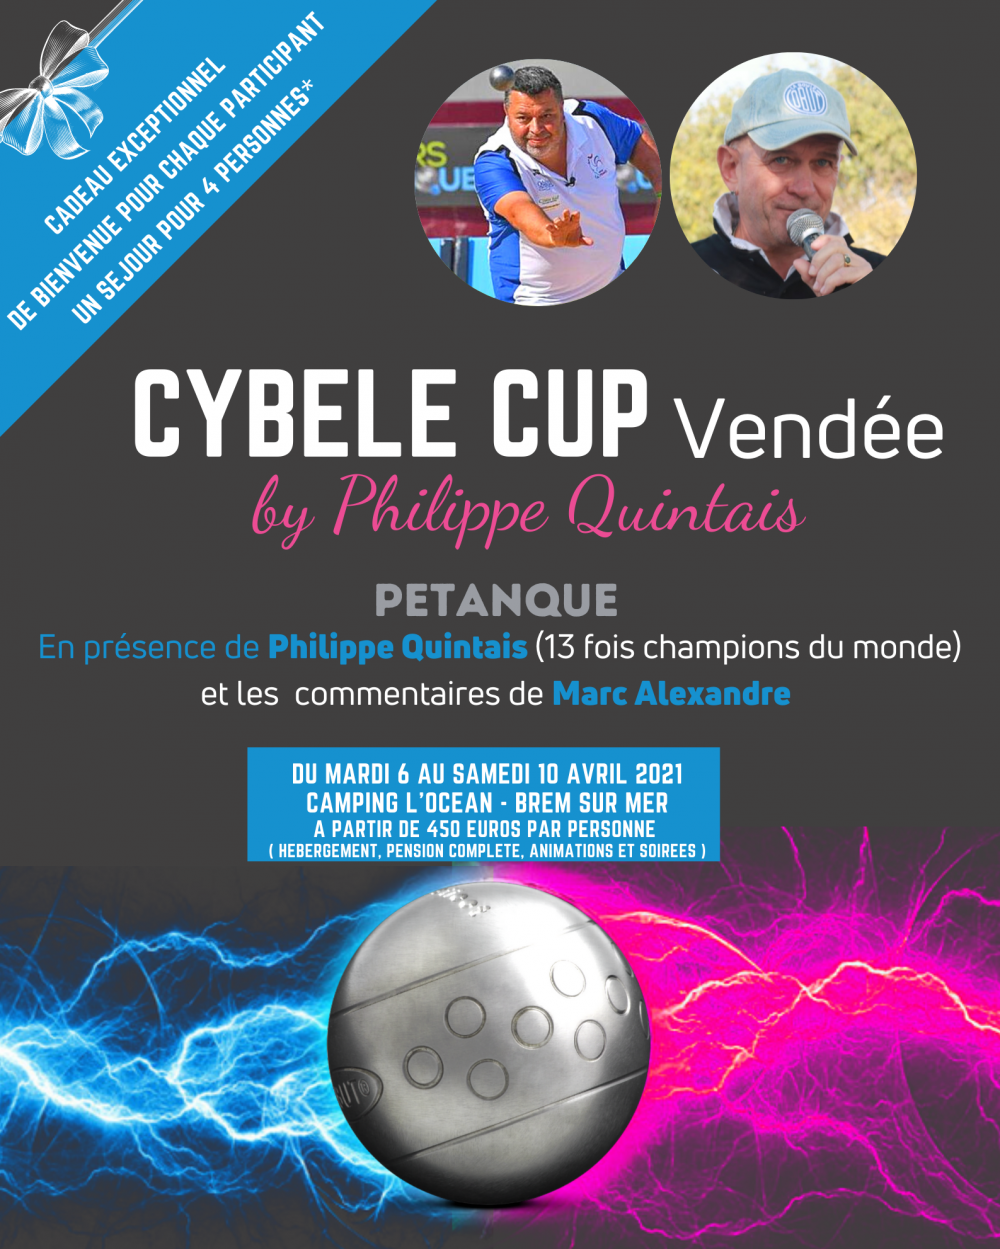 CYBELE CUP Vendée réseaux sociaux